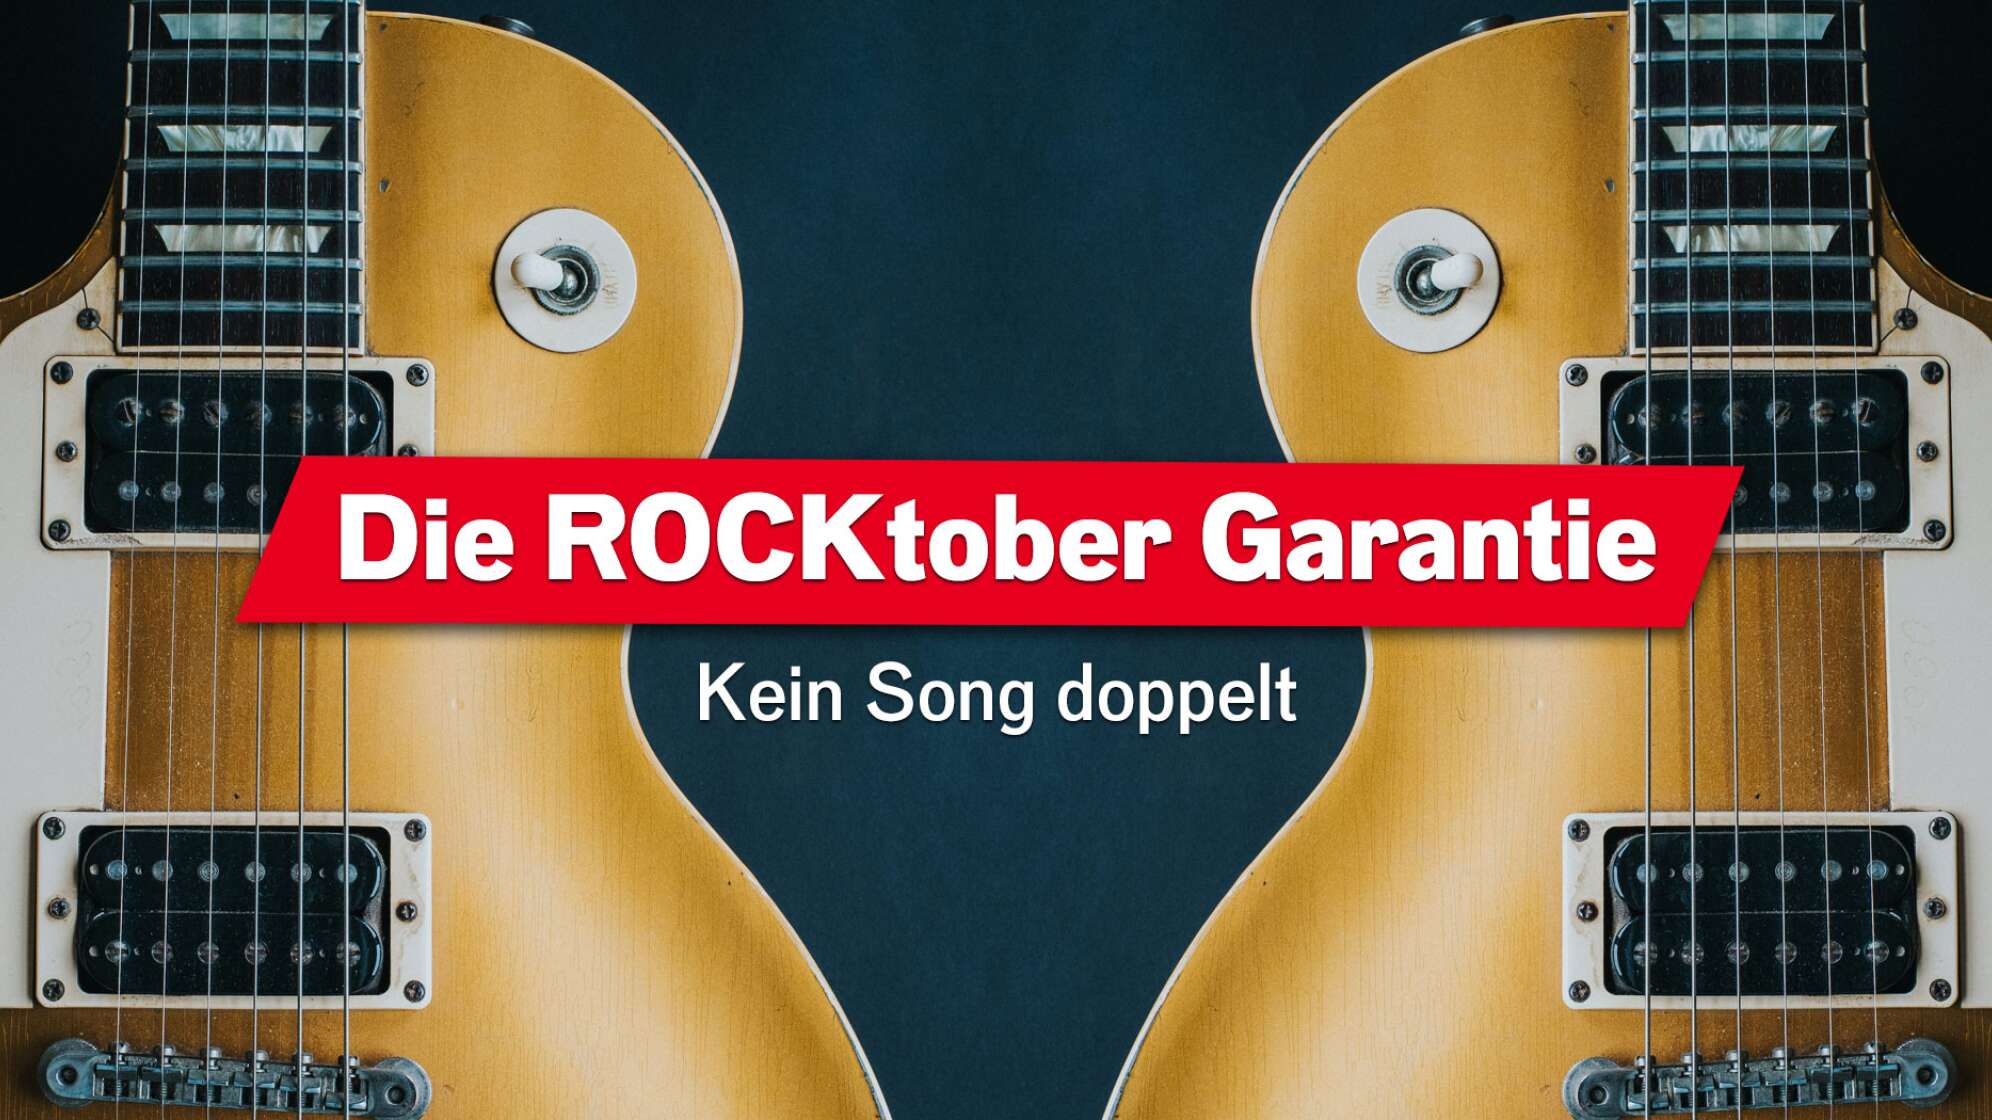 Bildausschnitt einer Gitarre gespiegelt, Text "Die ROCKtober Garantie: Kein Song doppelt"